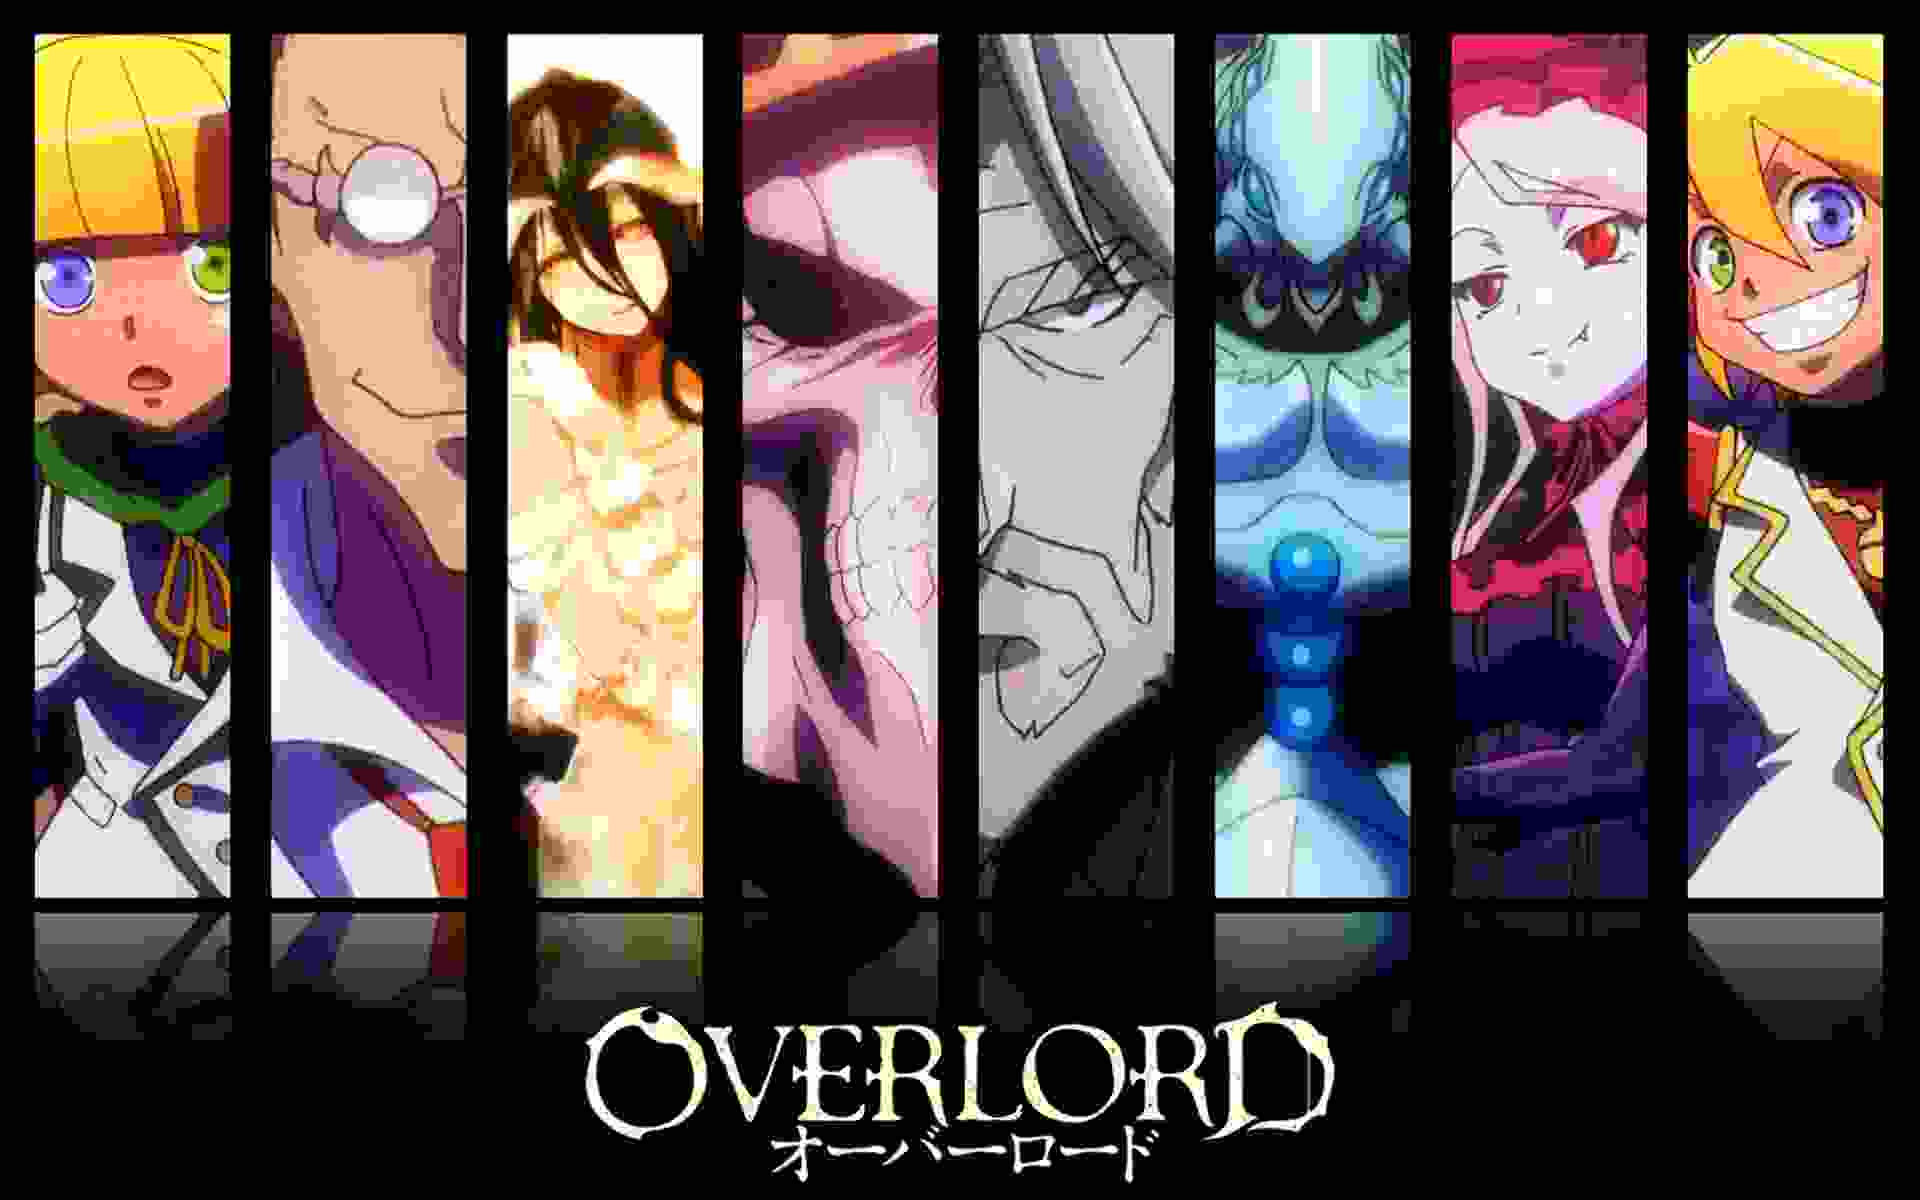 Overlord Saison 4 Episode 1 : Vidéo d'avant-première disponible ! Date de sortie et plus à savoir